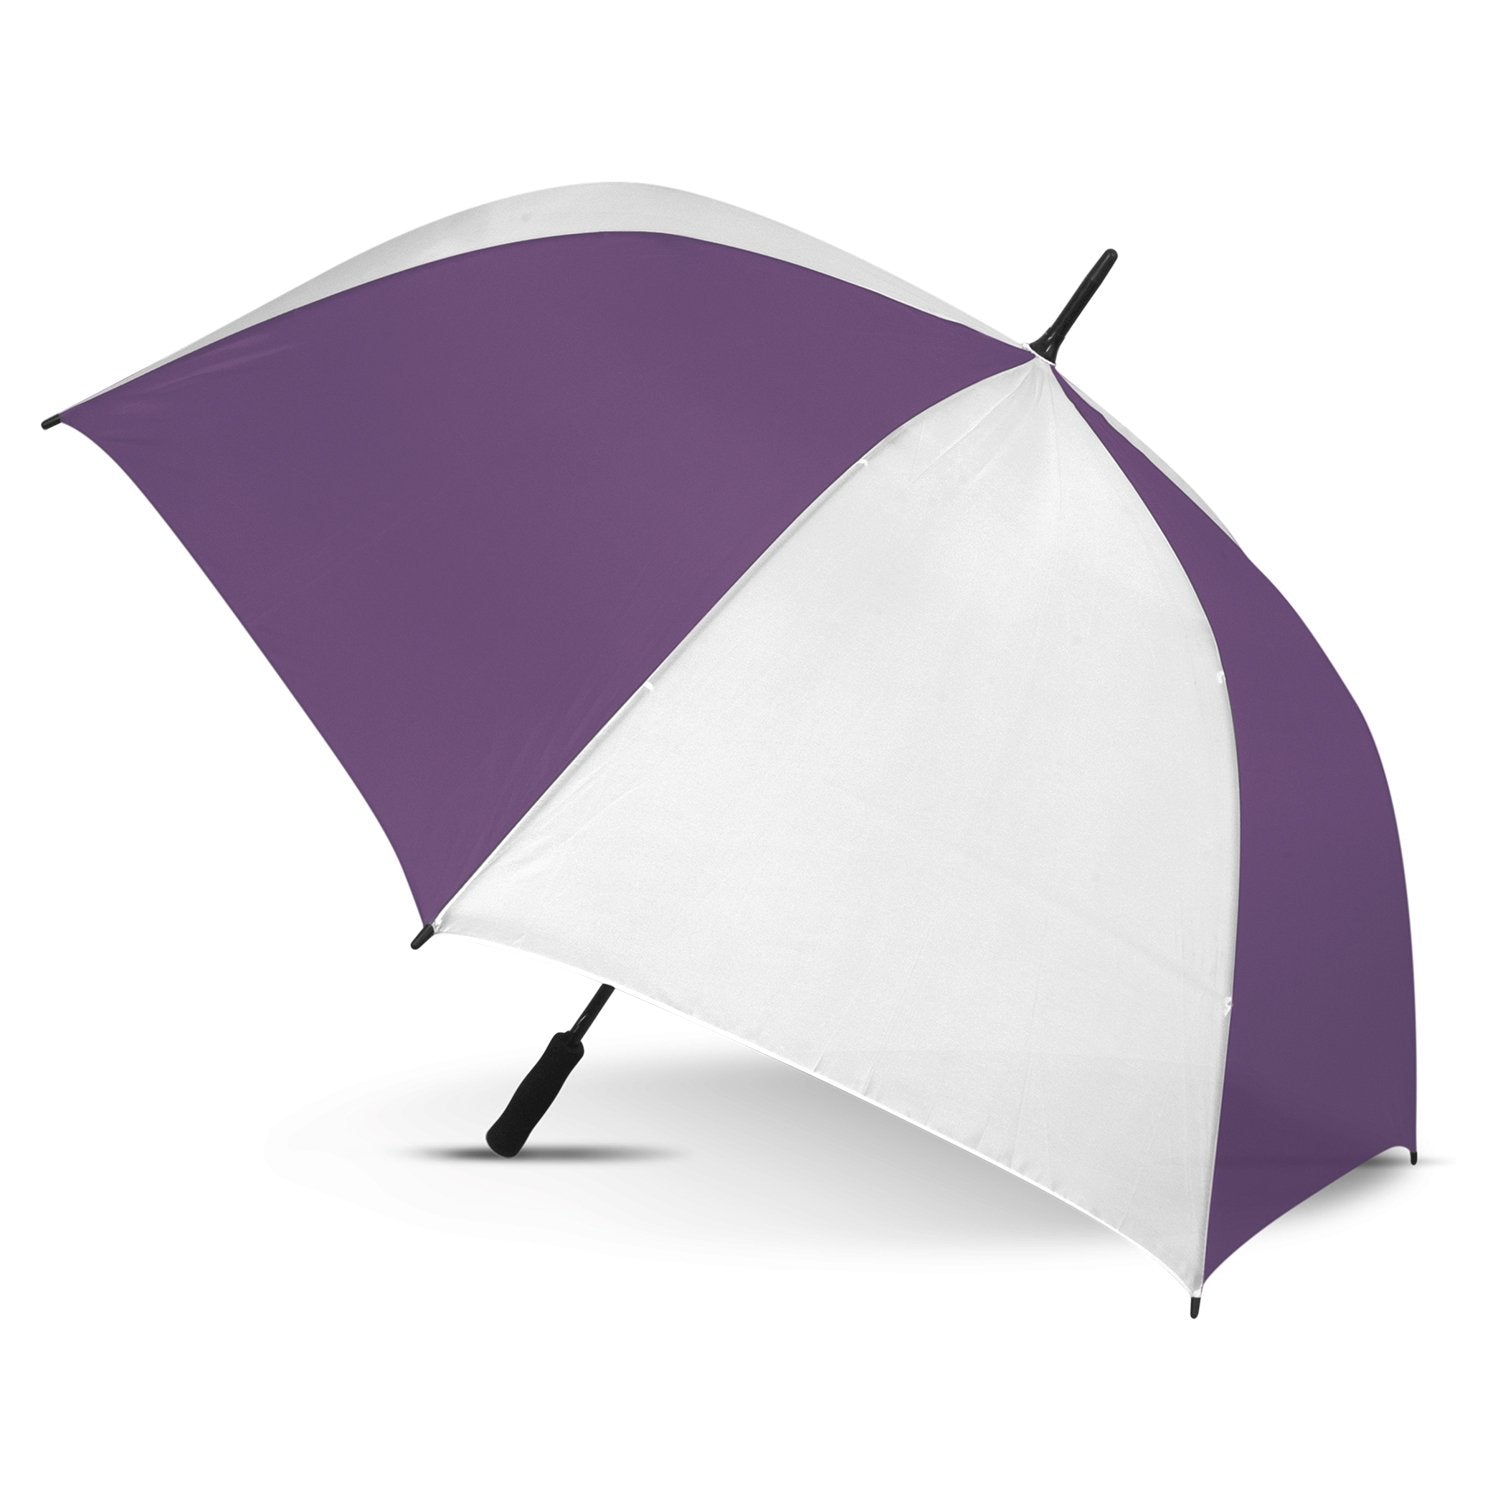 STORM-PROOF®️-premium-sports-umbrella-auto-open-white-and-purple-umbrella